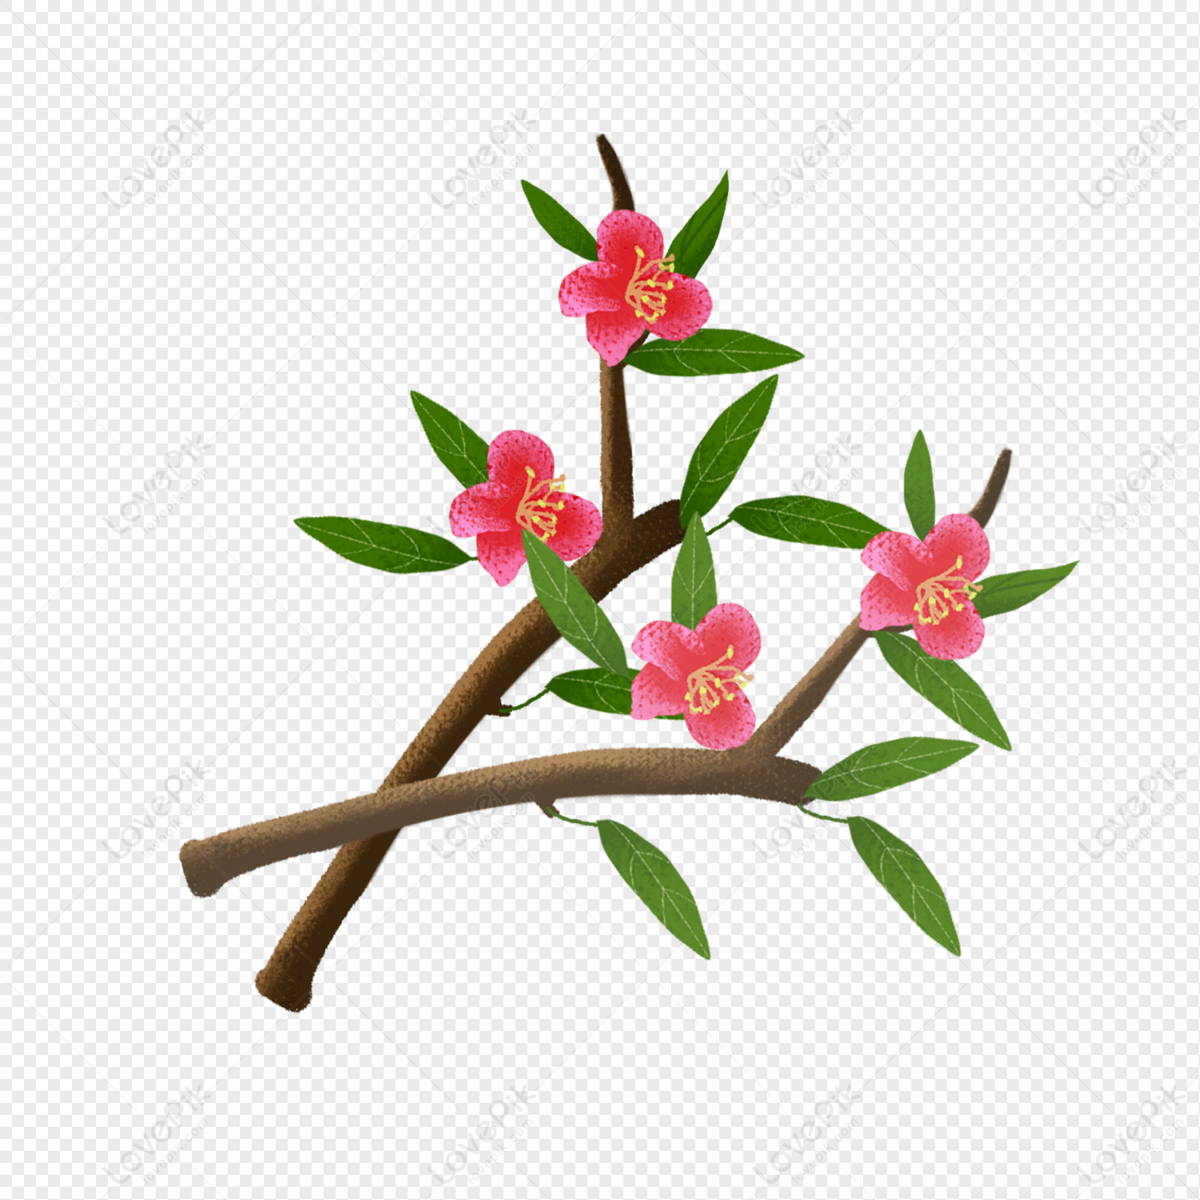 Hoa Begonia đỏ: Hoa Begonia đỏ là một loài hoa được ưa chuộng trong vườn hoa, vì nó có màu sắc rực rỡ và khả năng chịu được điều kiện thời tiết khắc nghiệt. Hãy nhìn vào hình ảnh này và cảm nhận vẻ đẹp tuyệt vời của hoa Begonia đỏ.